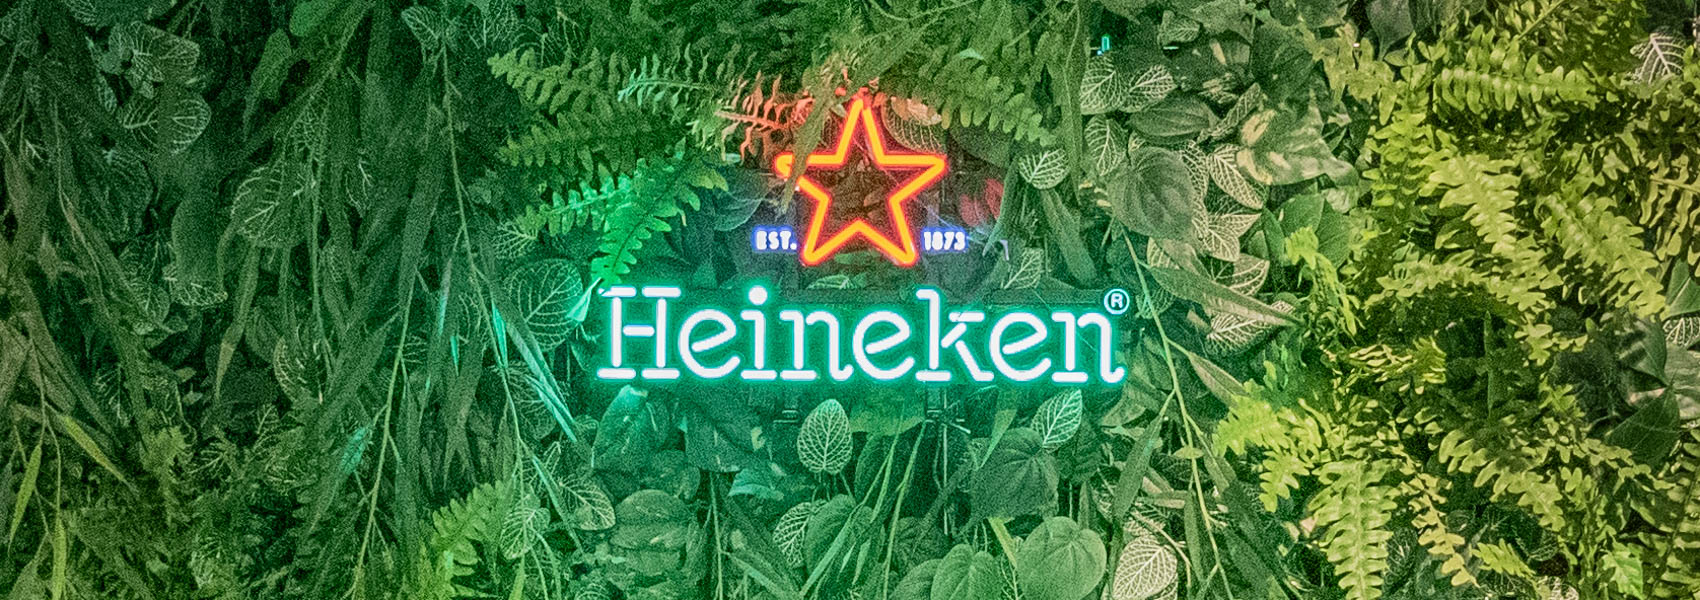 Heineken expérience à Amsterdam